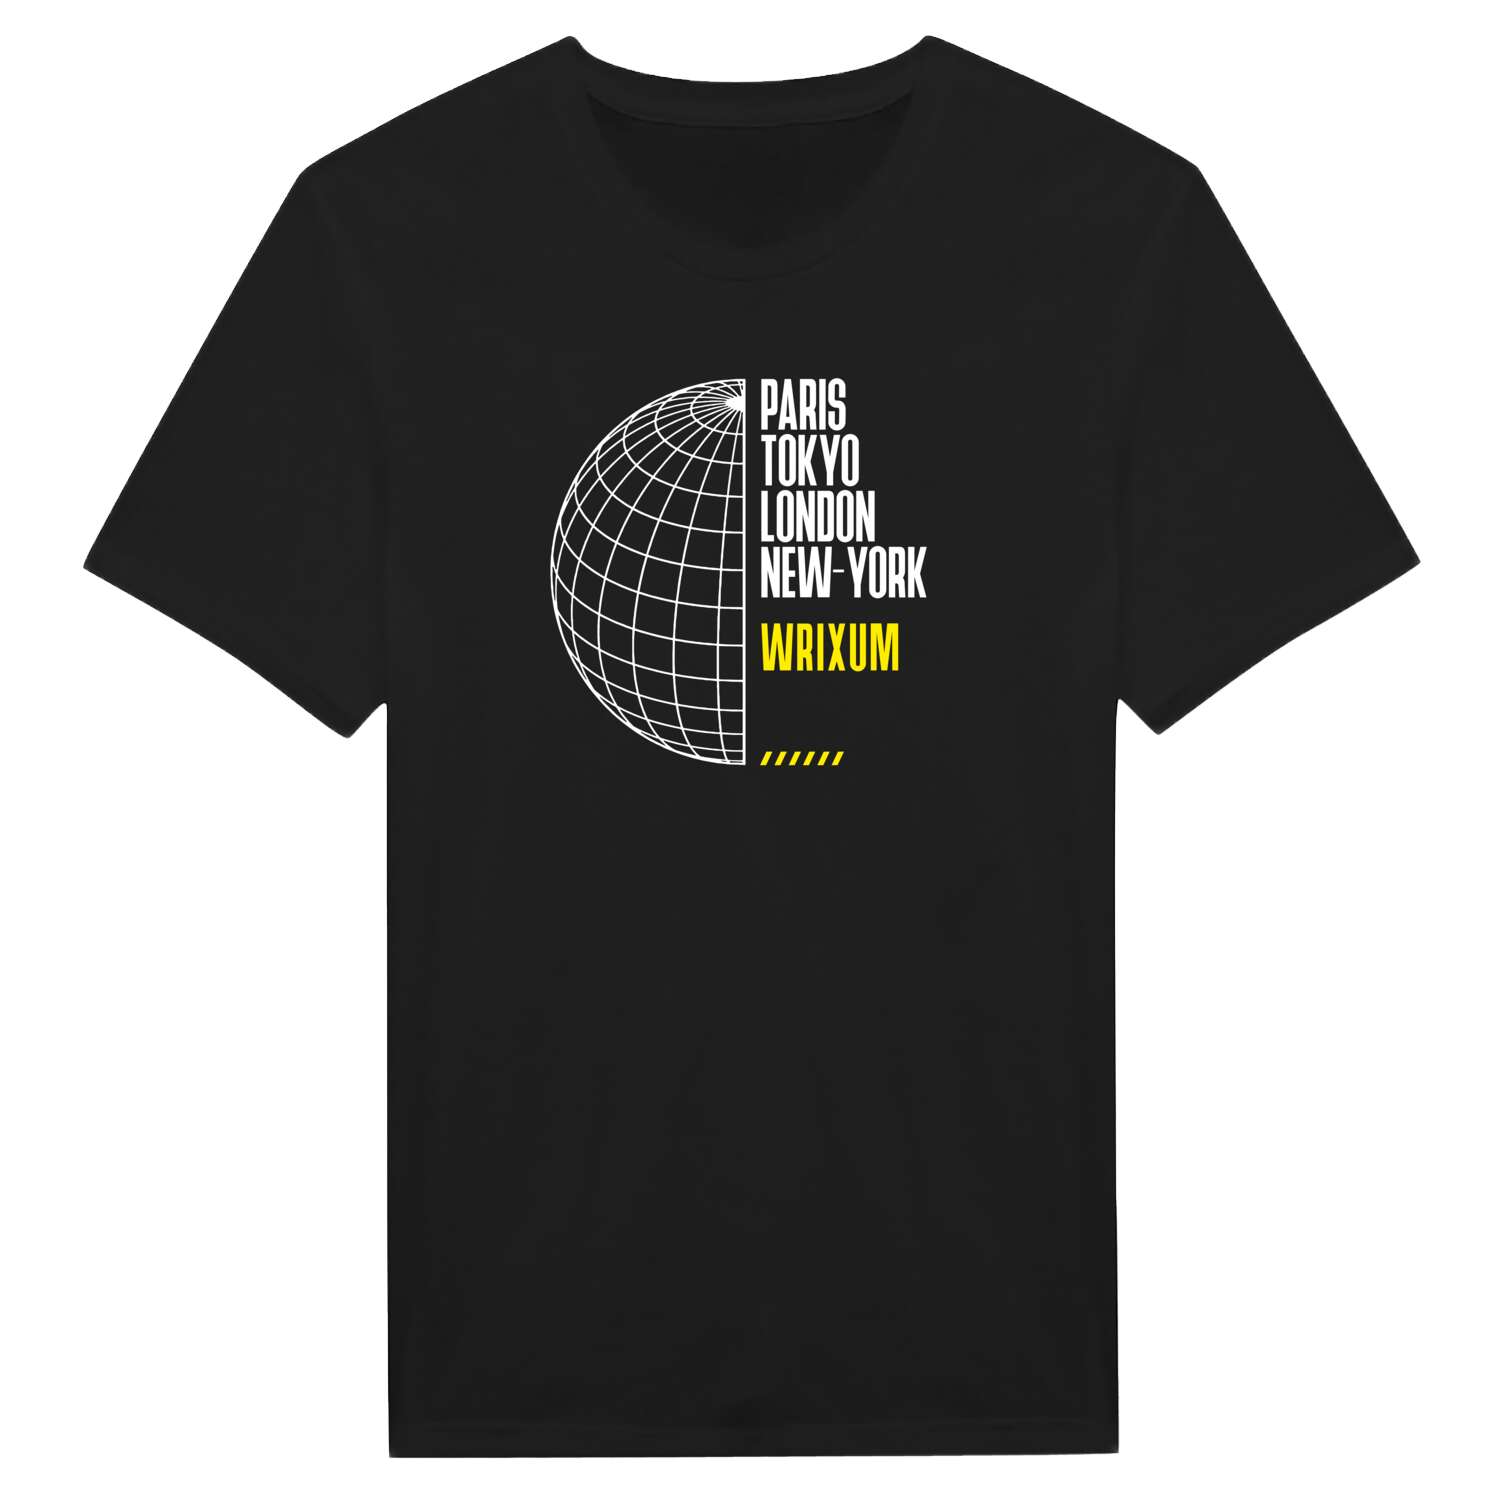 Wrixum T-Shirt »Paris Tokyo London«